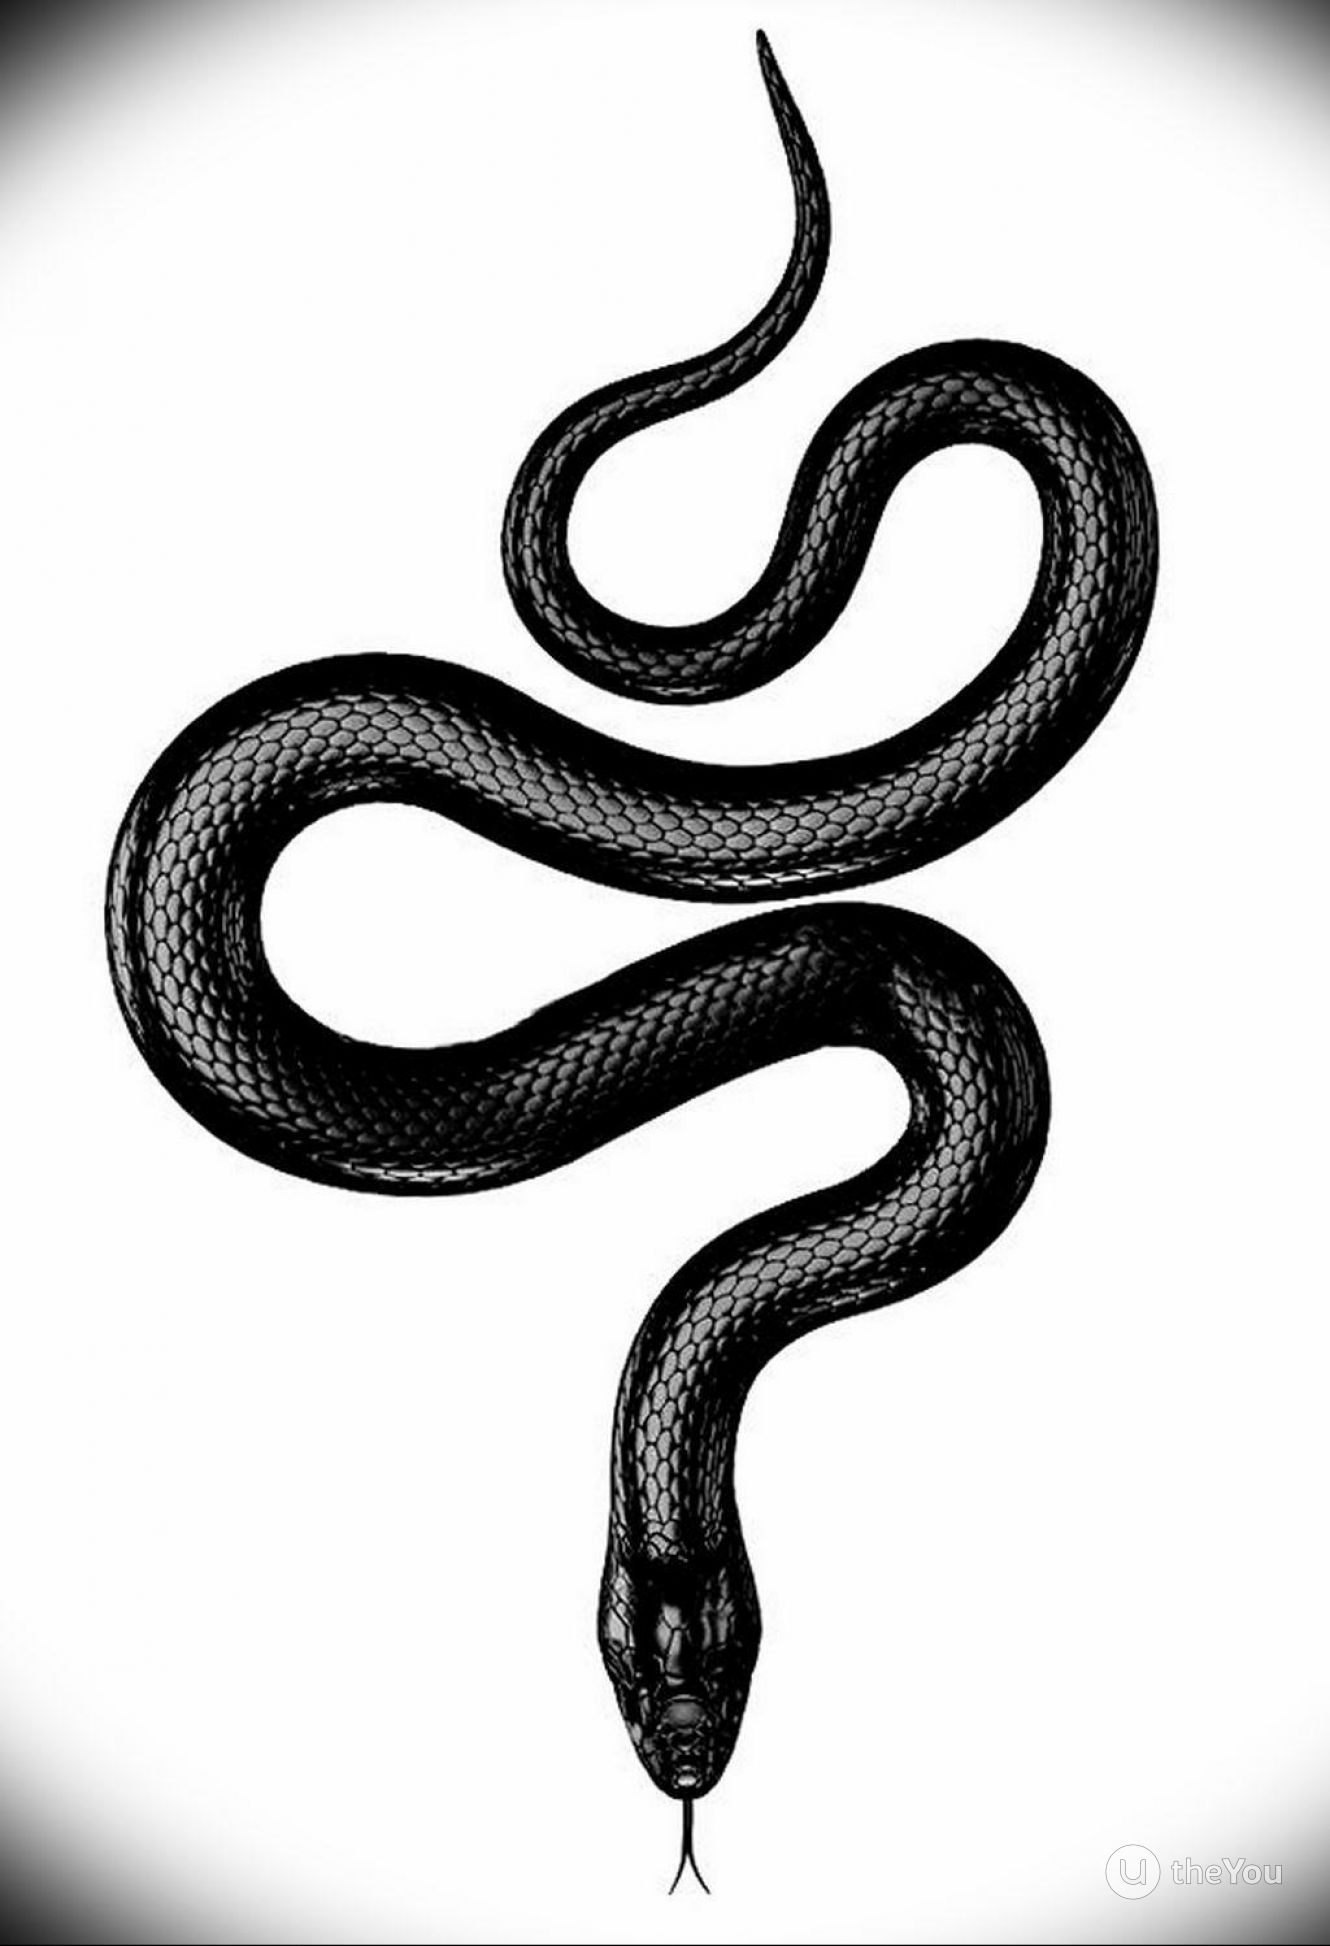 Черная змея в лесу - 73 фото